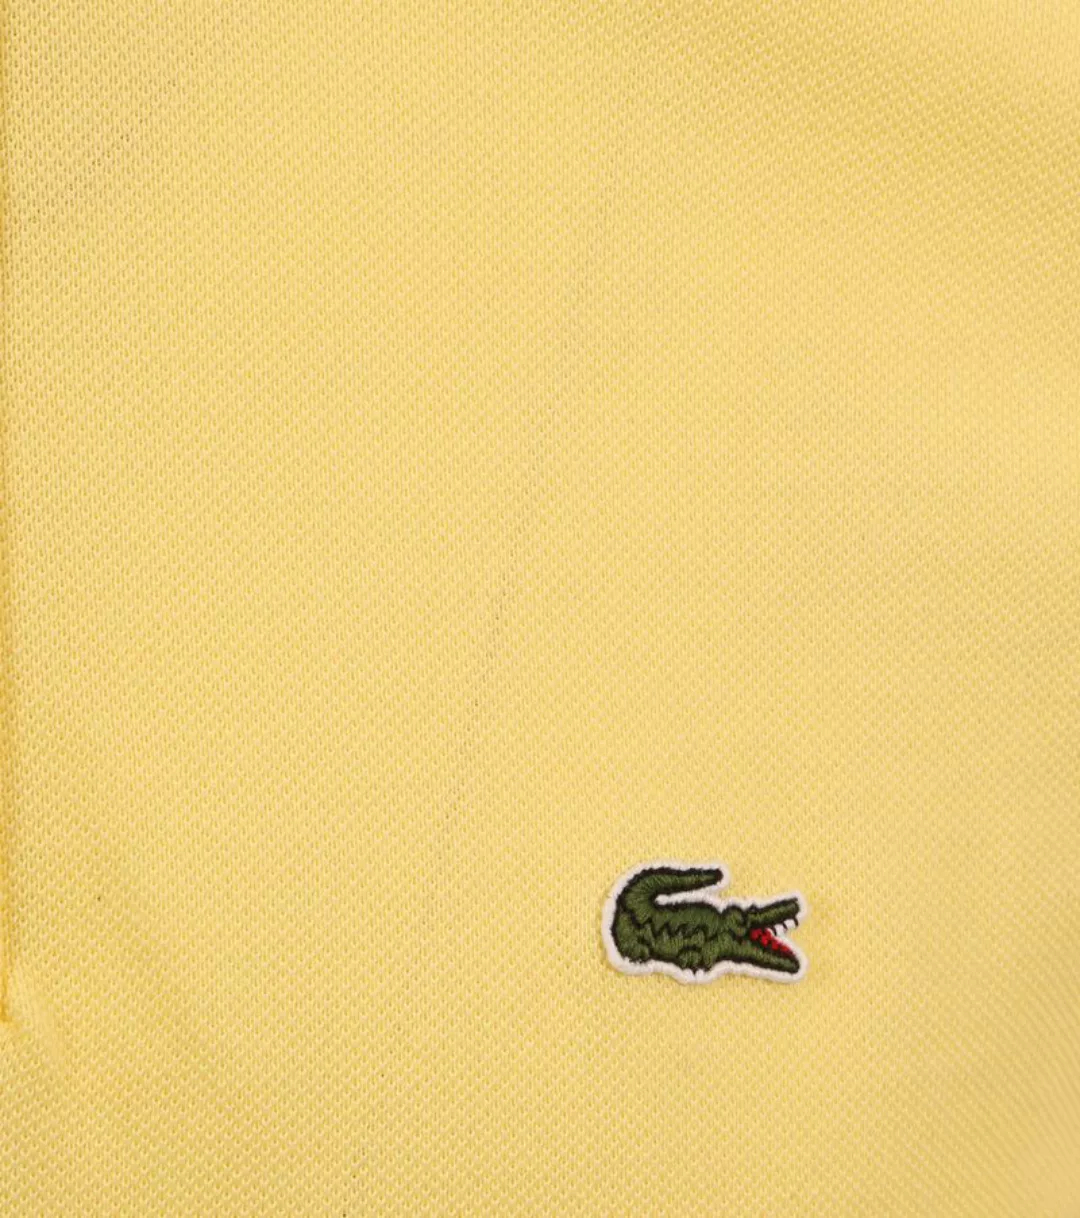 Lacoste Piqué Poloshirt Gelb - Größe XL günstig online kaufen